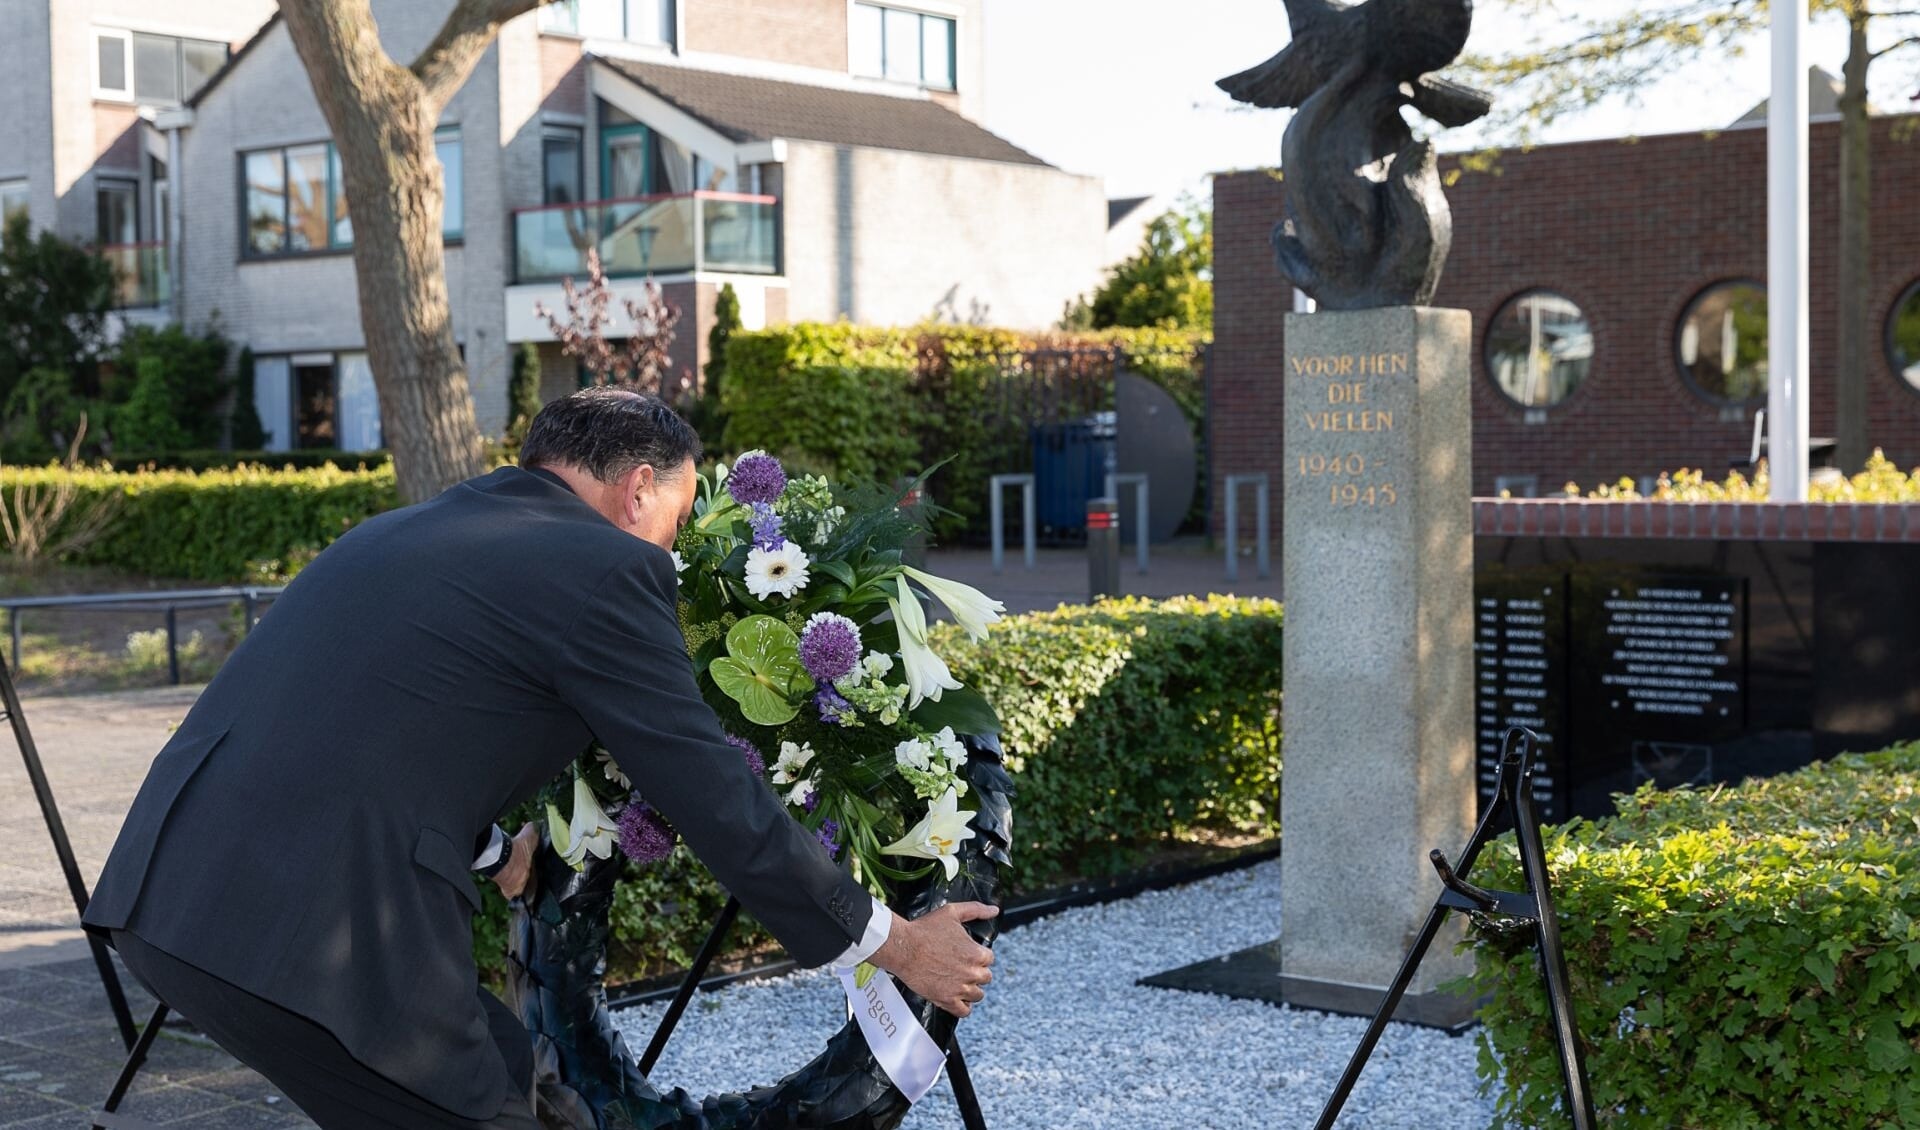 Ton Wolvers, voorzitter OVV, legt een krans bij het monument in Voorhout. De foto is op een eerder moment gemaakt. 